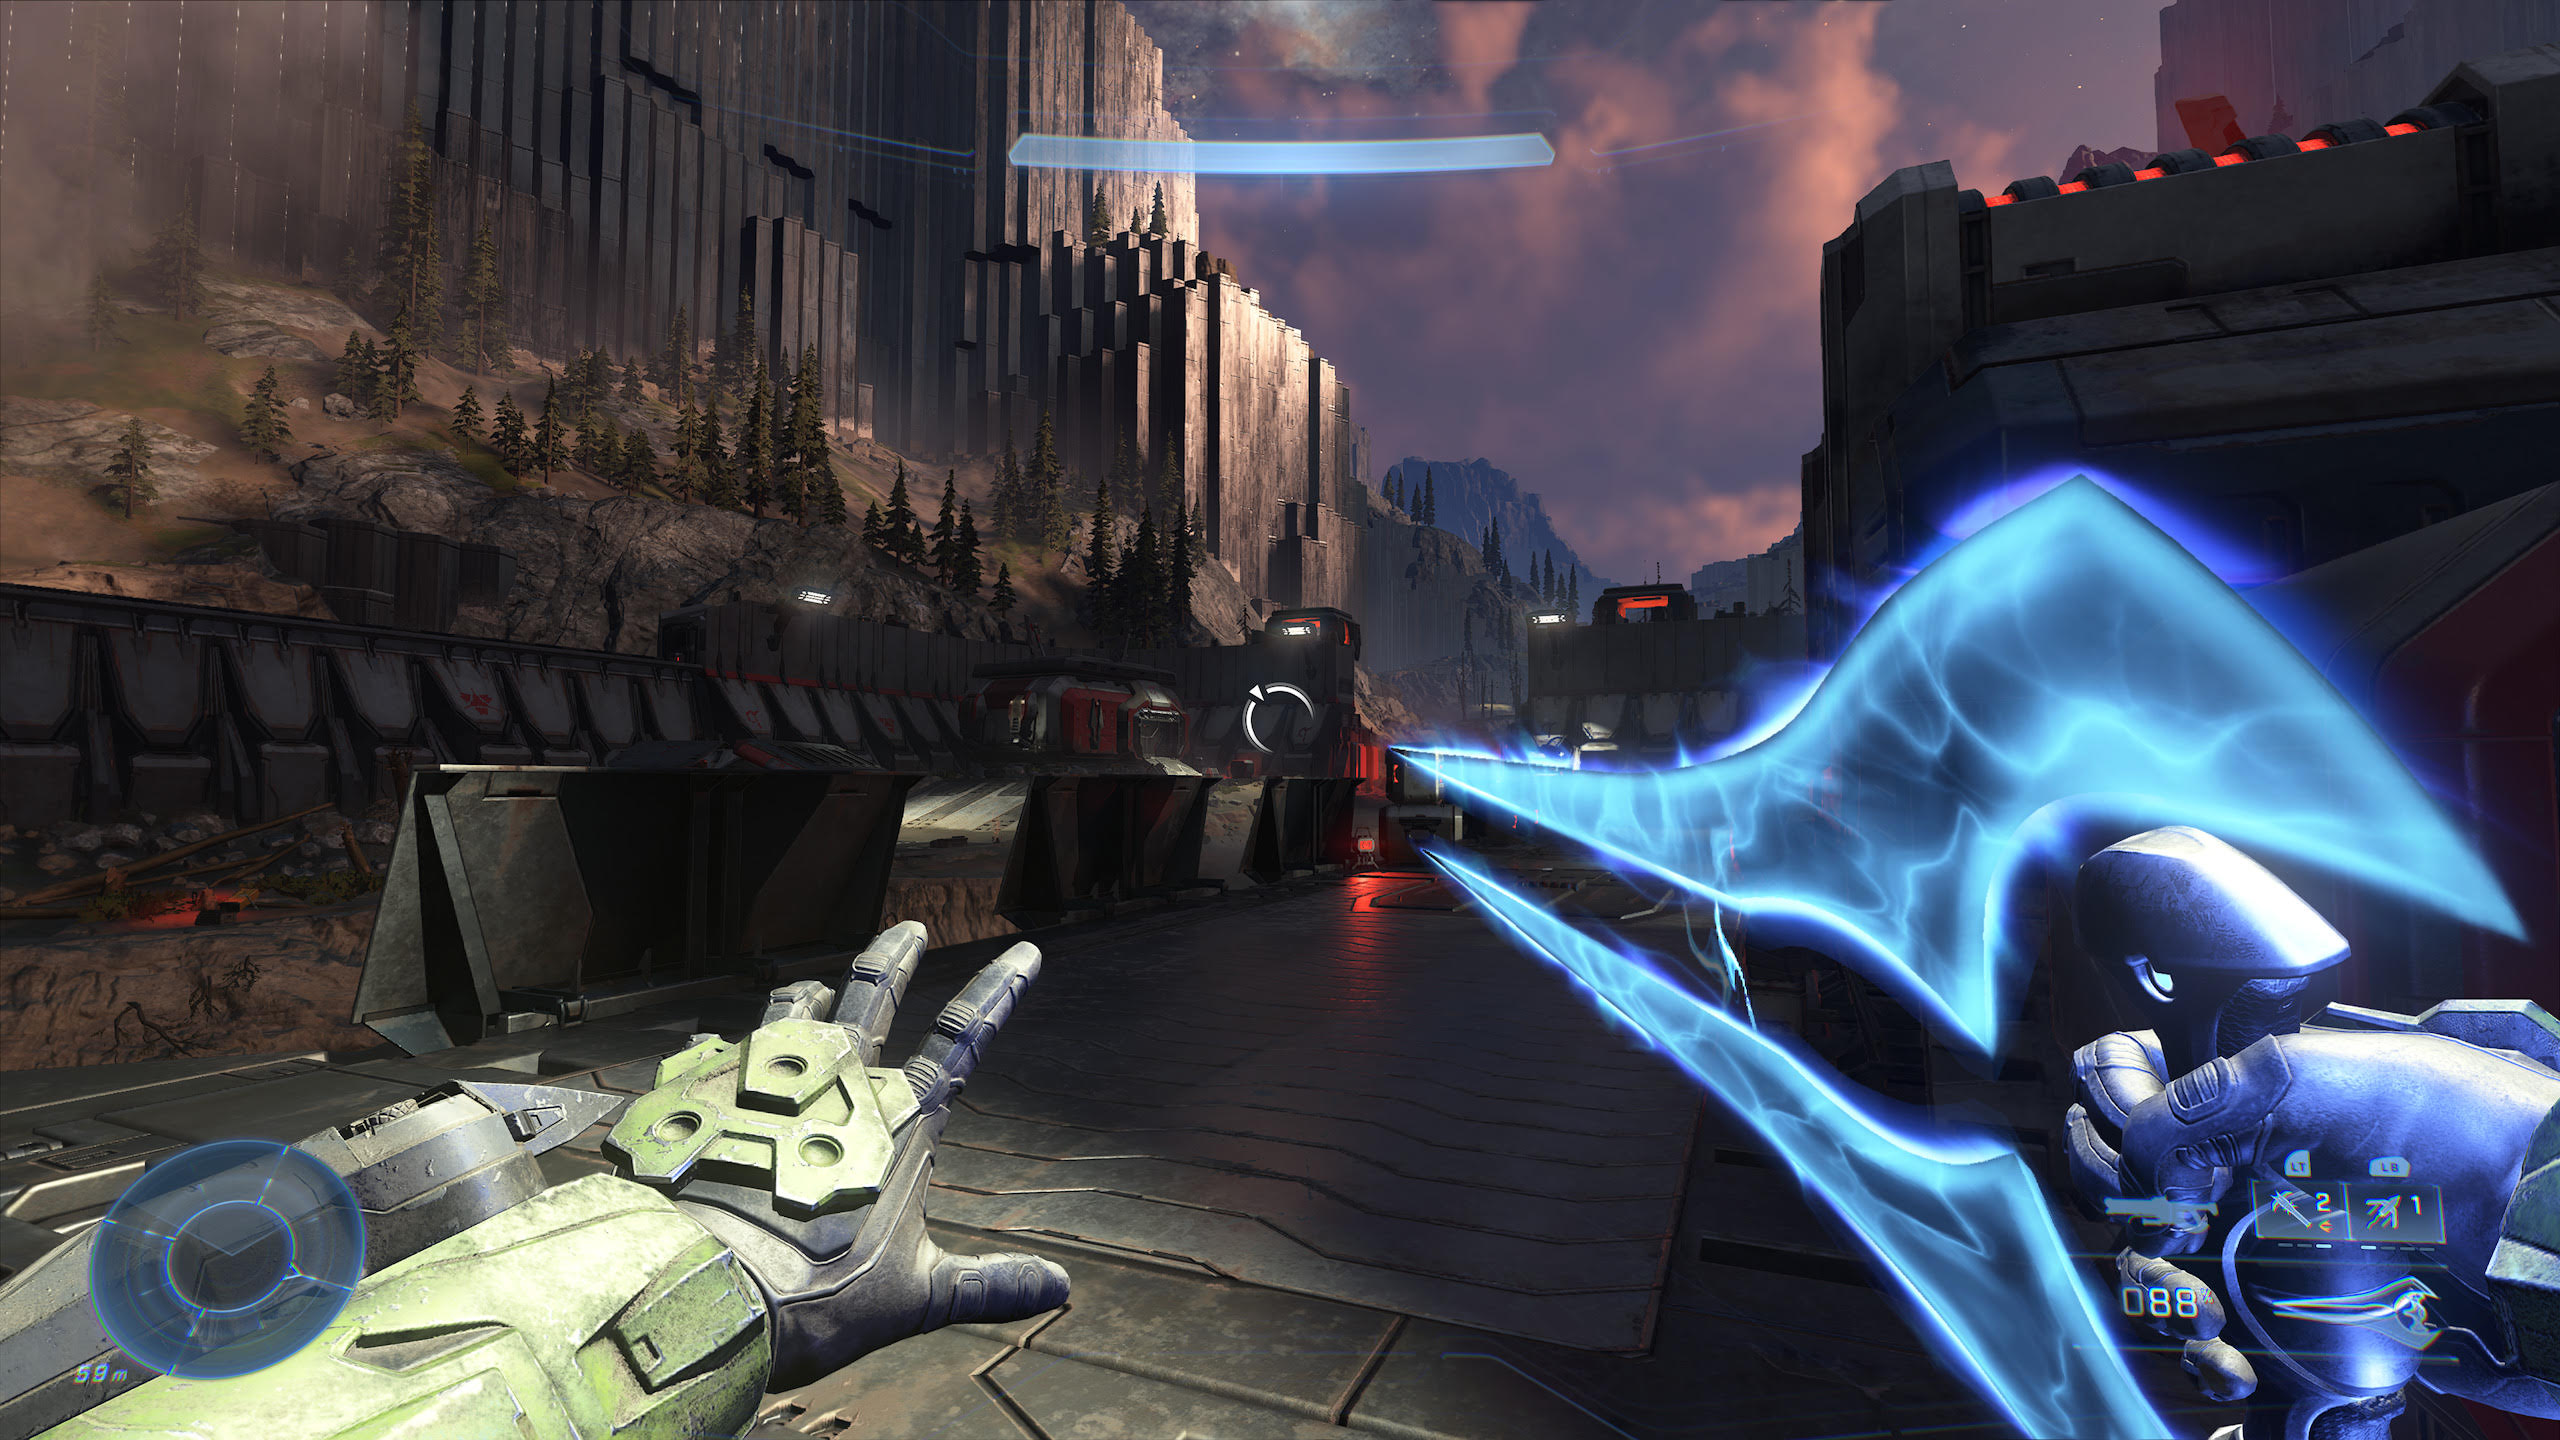 Скриншот Halo Infinite Xbox One & Xbox Series X|S